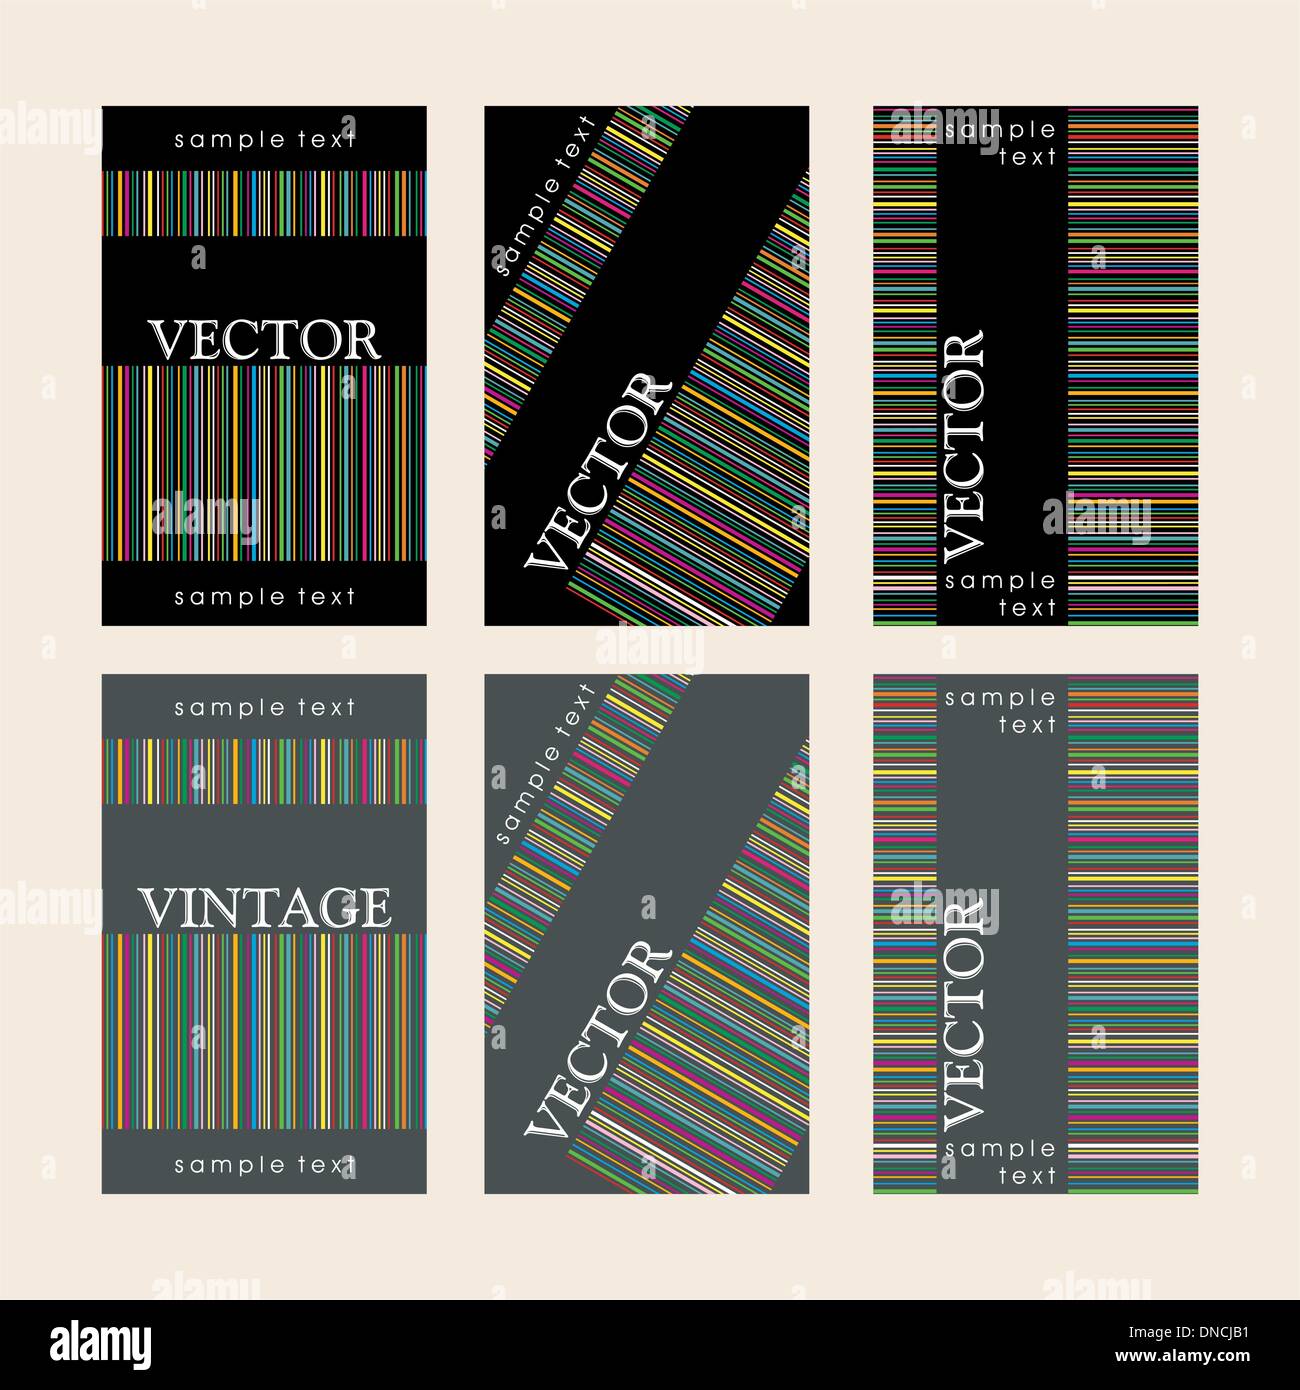 Vintage Wine etiquetas establecidas Ilustración del Vector